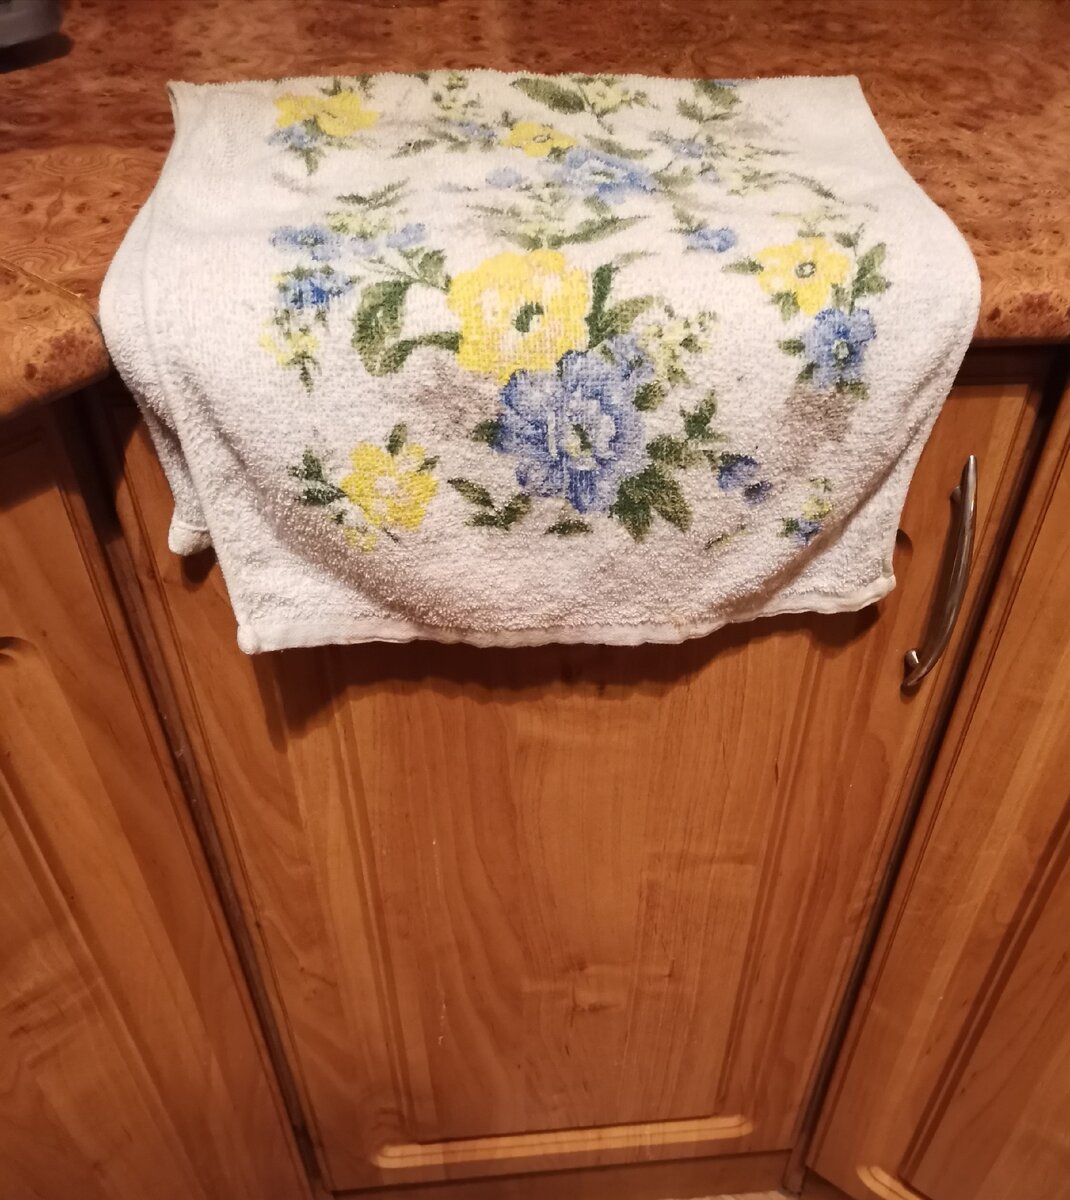 Кипельно чистые полотенца без мыла, без порошка. Почему мне не сказали об этом ранье